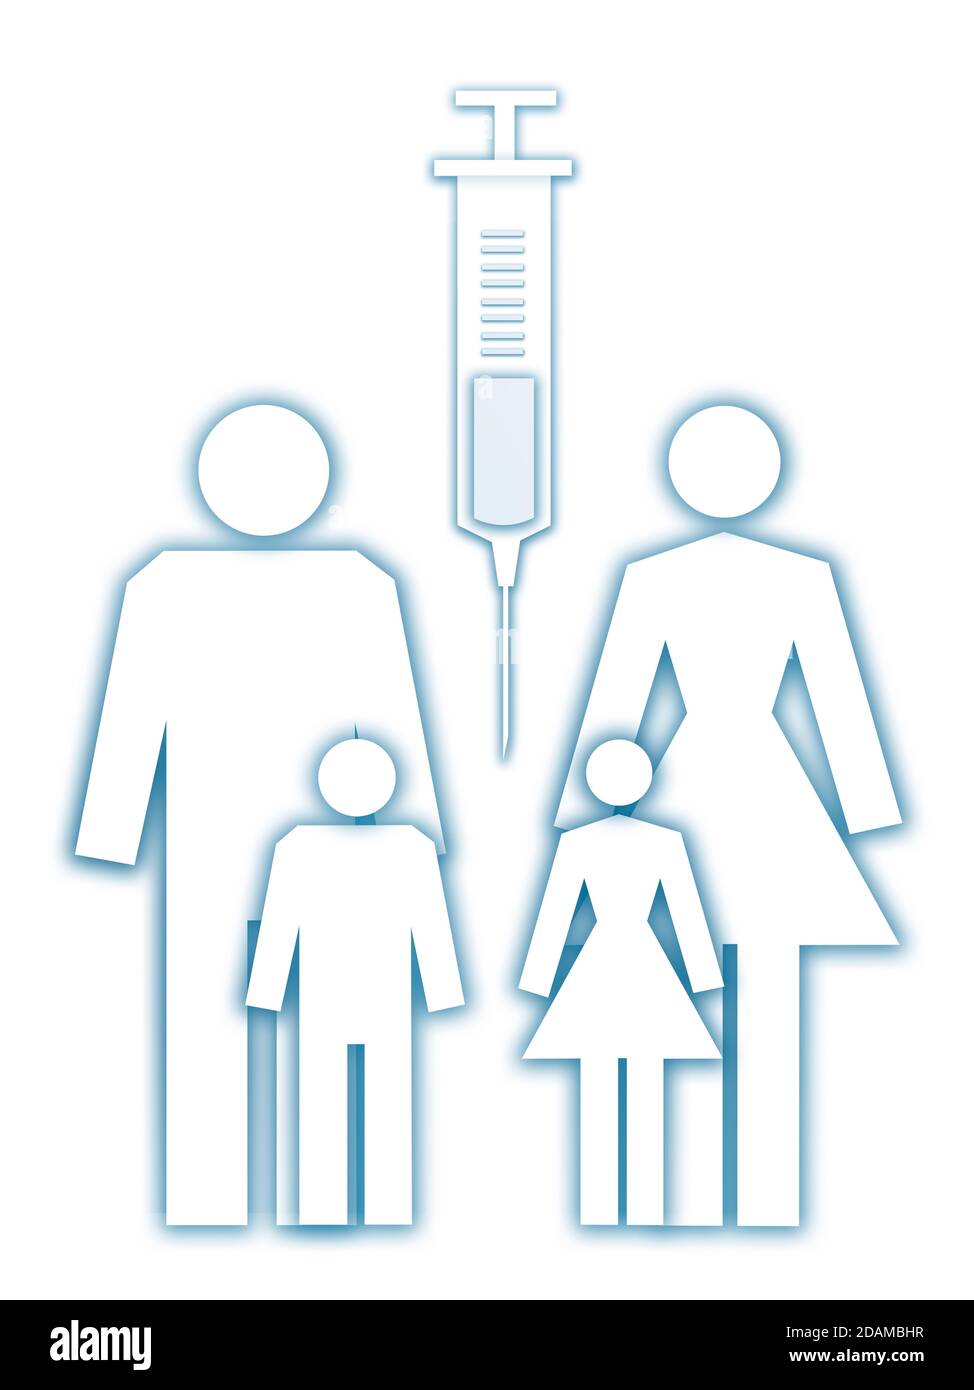 Family grouping with syringe, illustration. Stock Photo